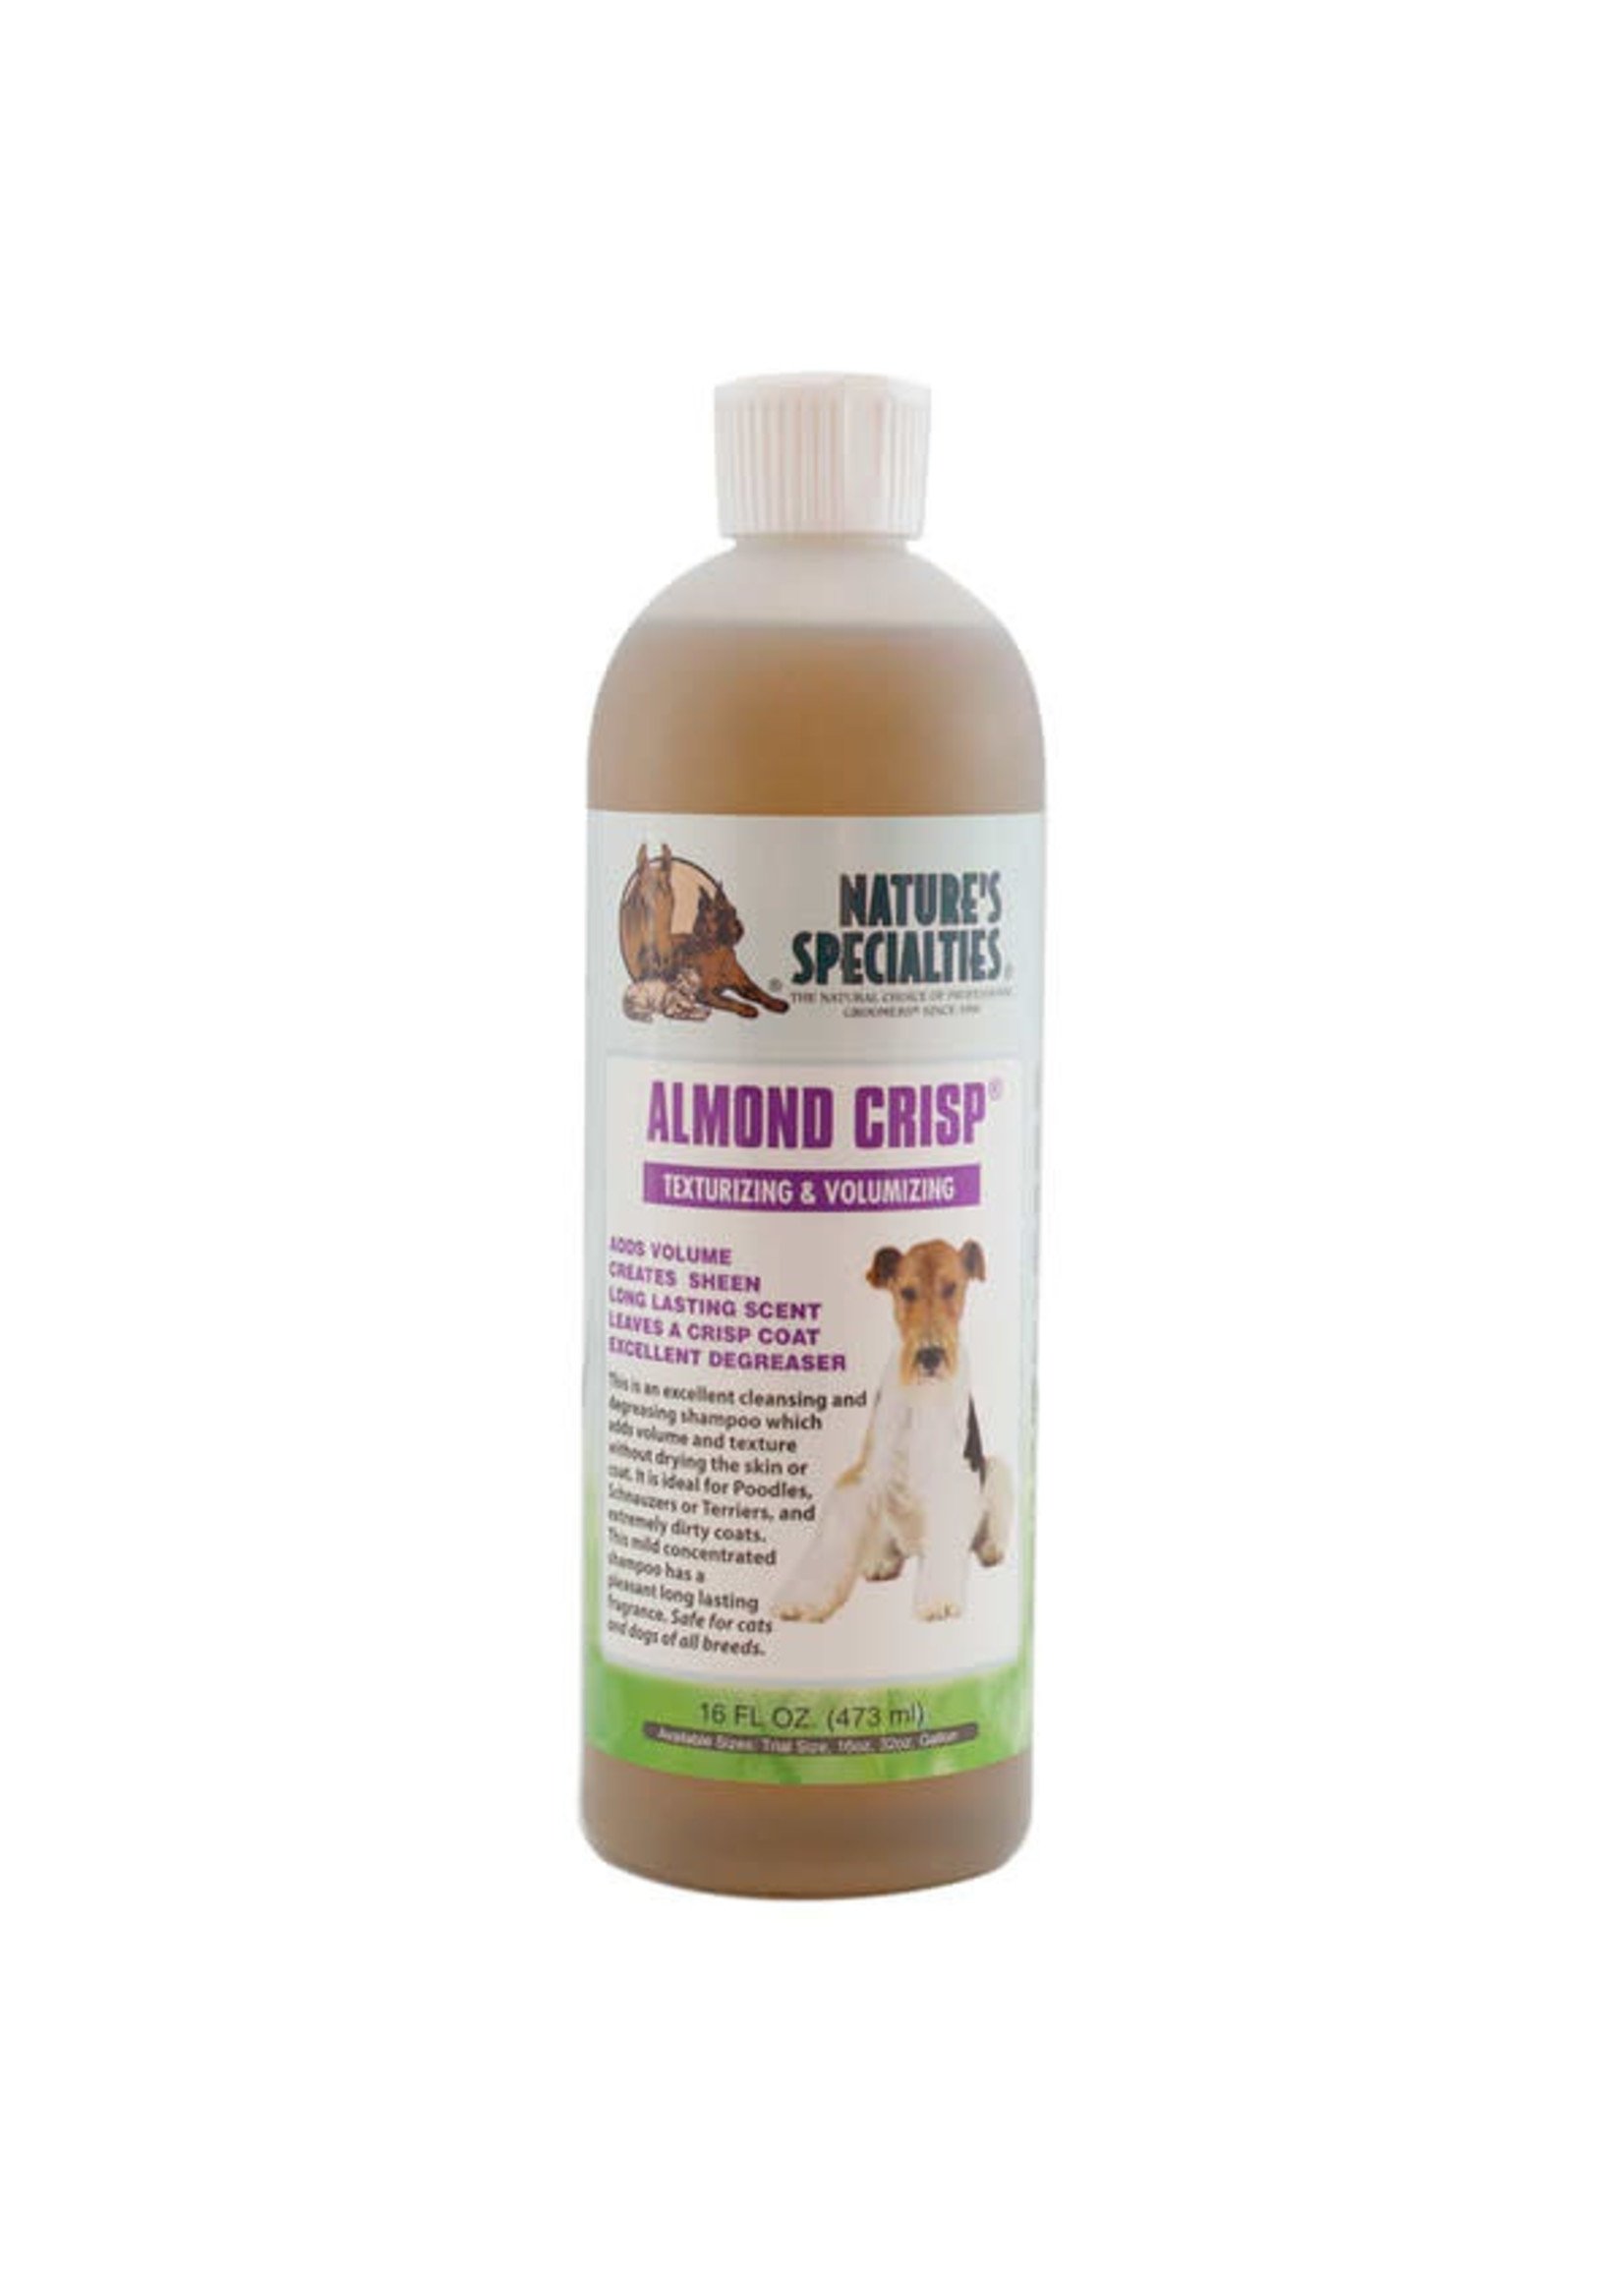 Nature's Specialties Nature's Specialties Almond Crisp Texturizing & Volumizing Shampoo 16fl oz